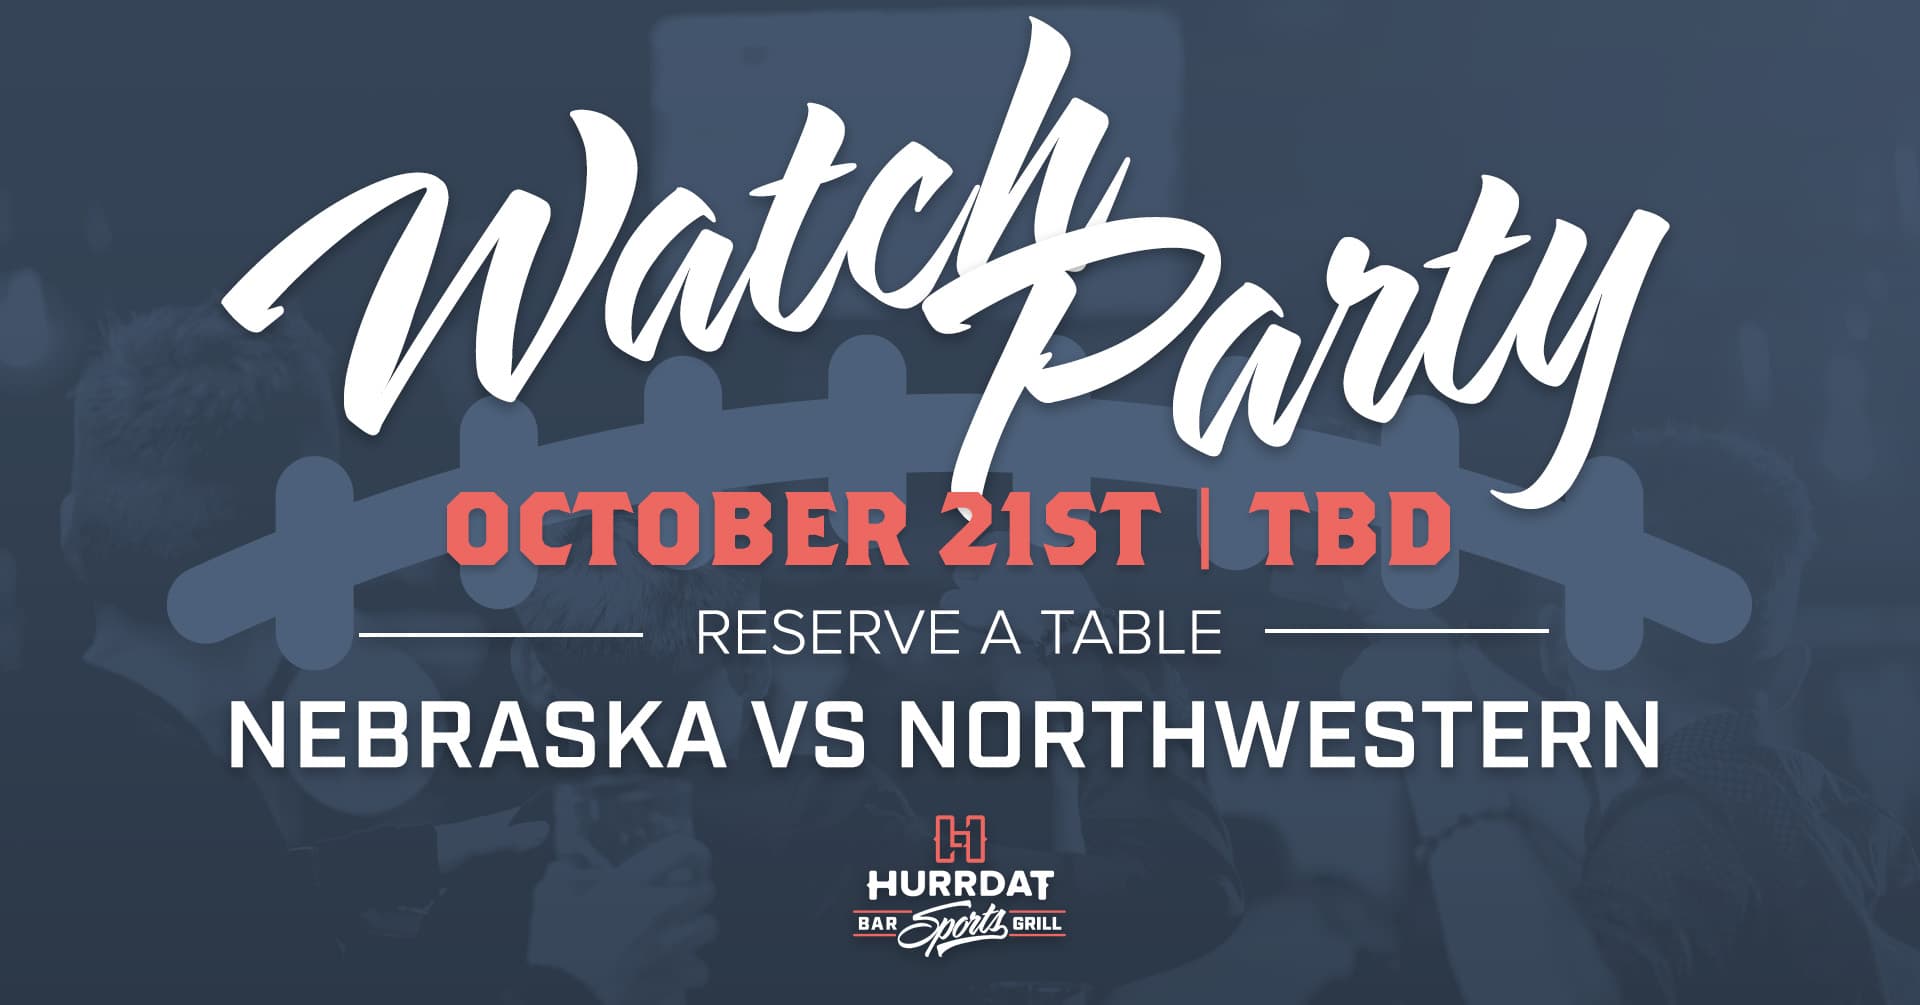 Nebraska vs Northwestern watch party